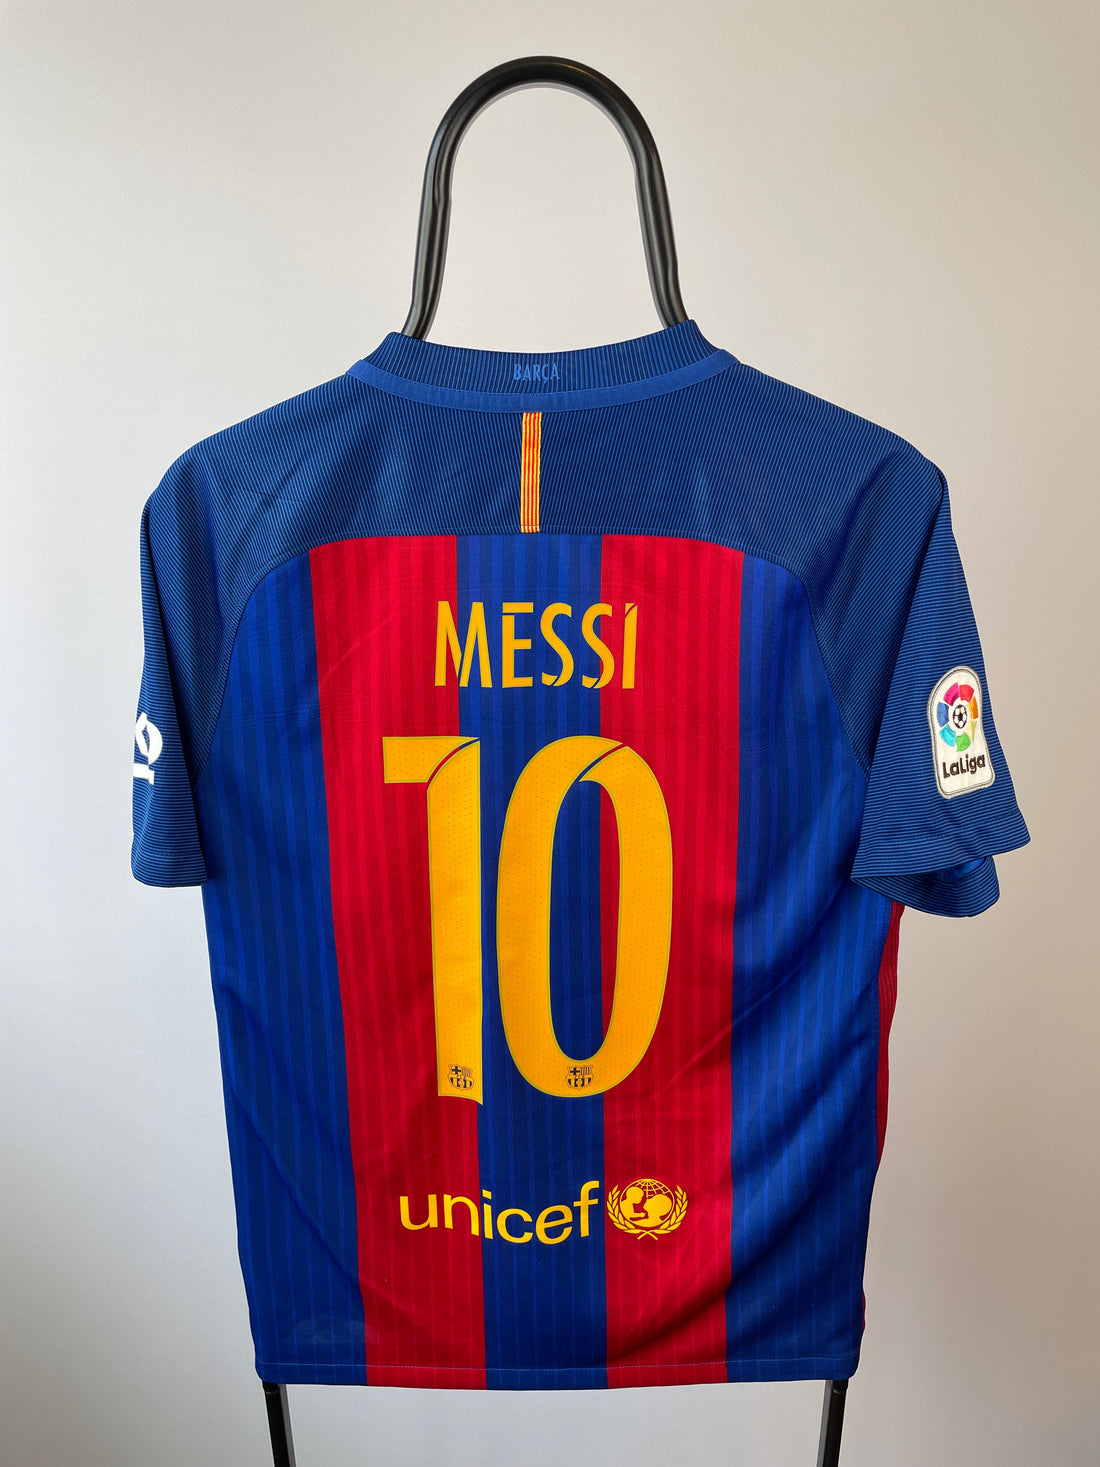 Lionel Messi Barcelona 16/17 hjemmebanetrøje - S